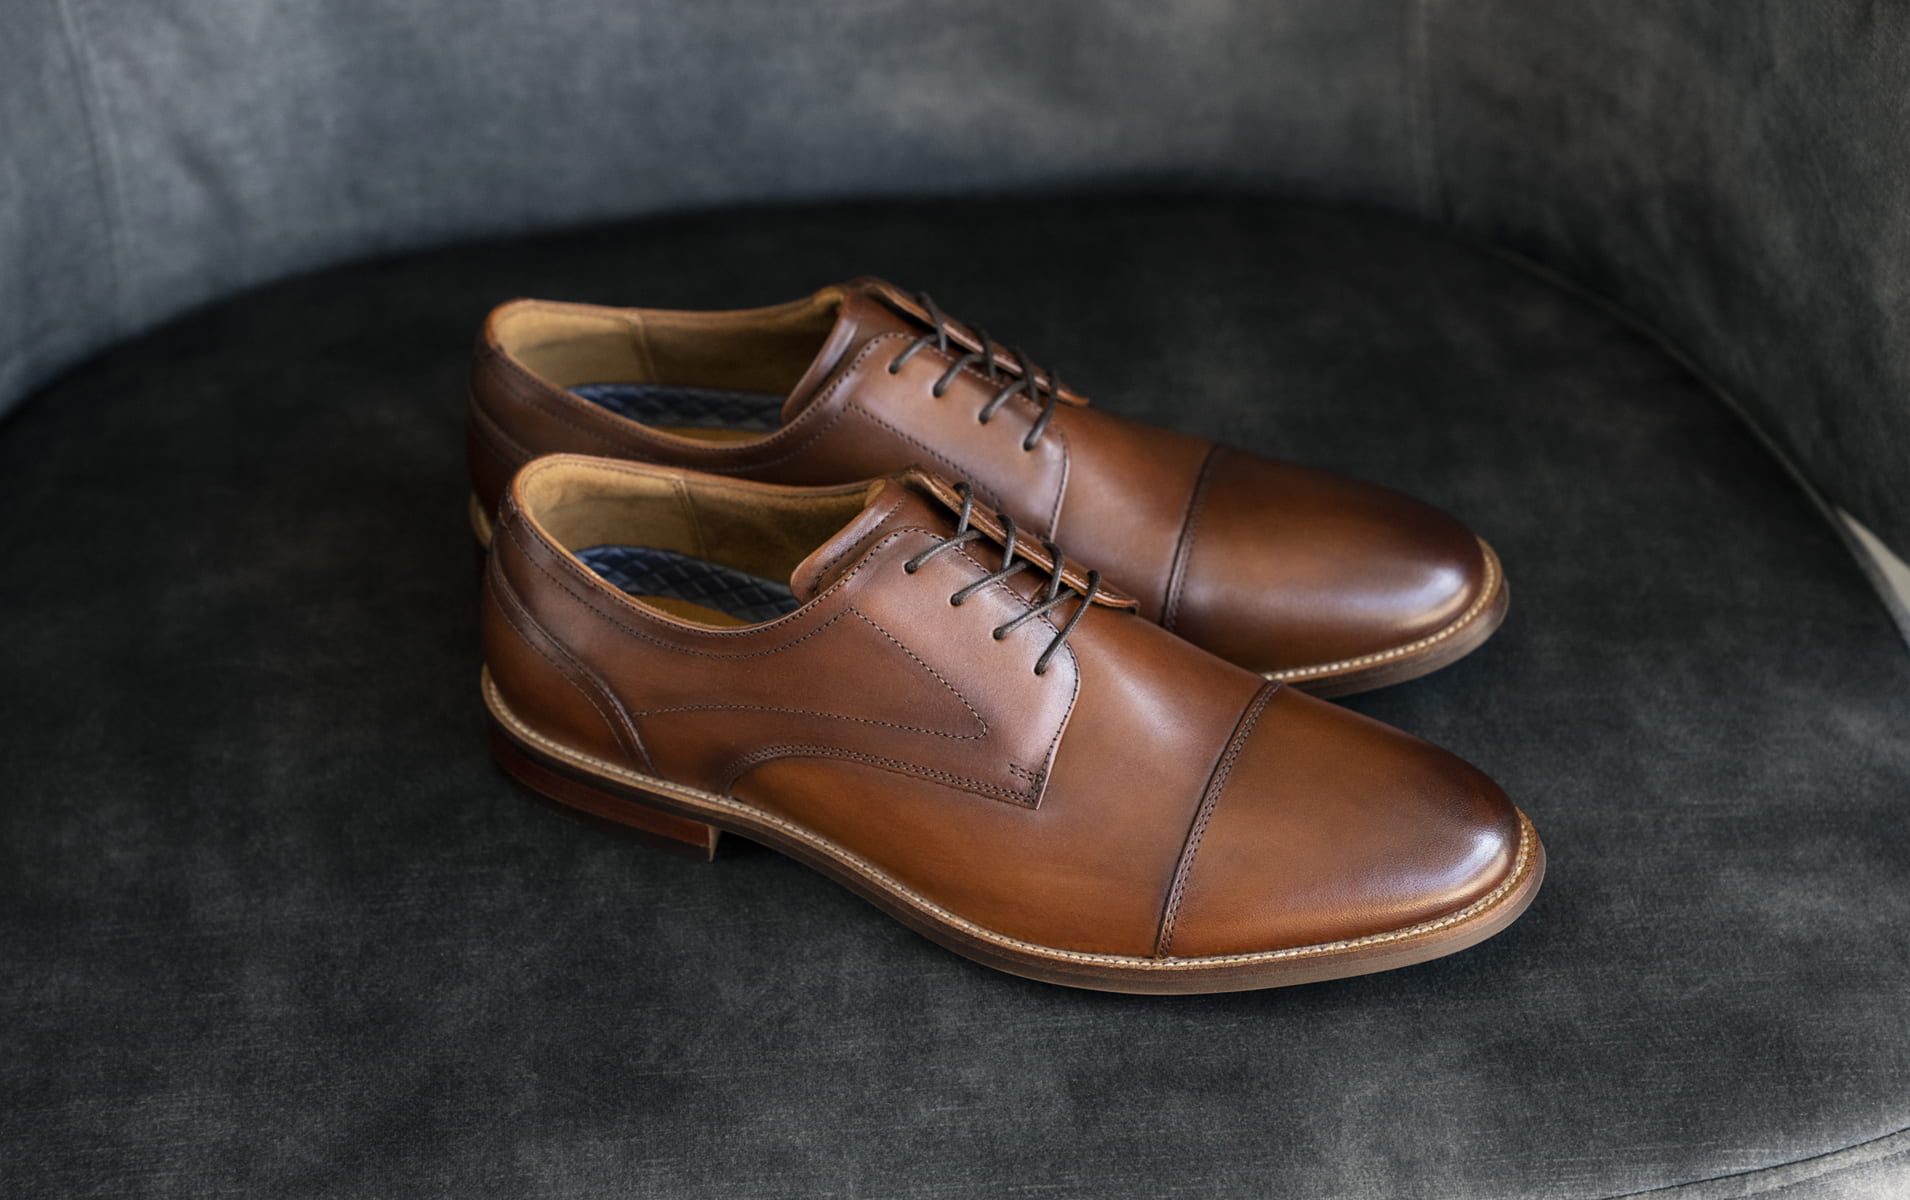 Shop Men's Dress Shoes, Casual Shoes, Sandals & Boots | Florsheim Shoes